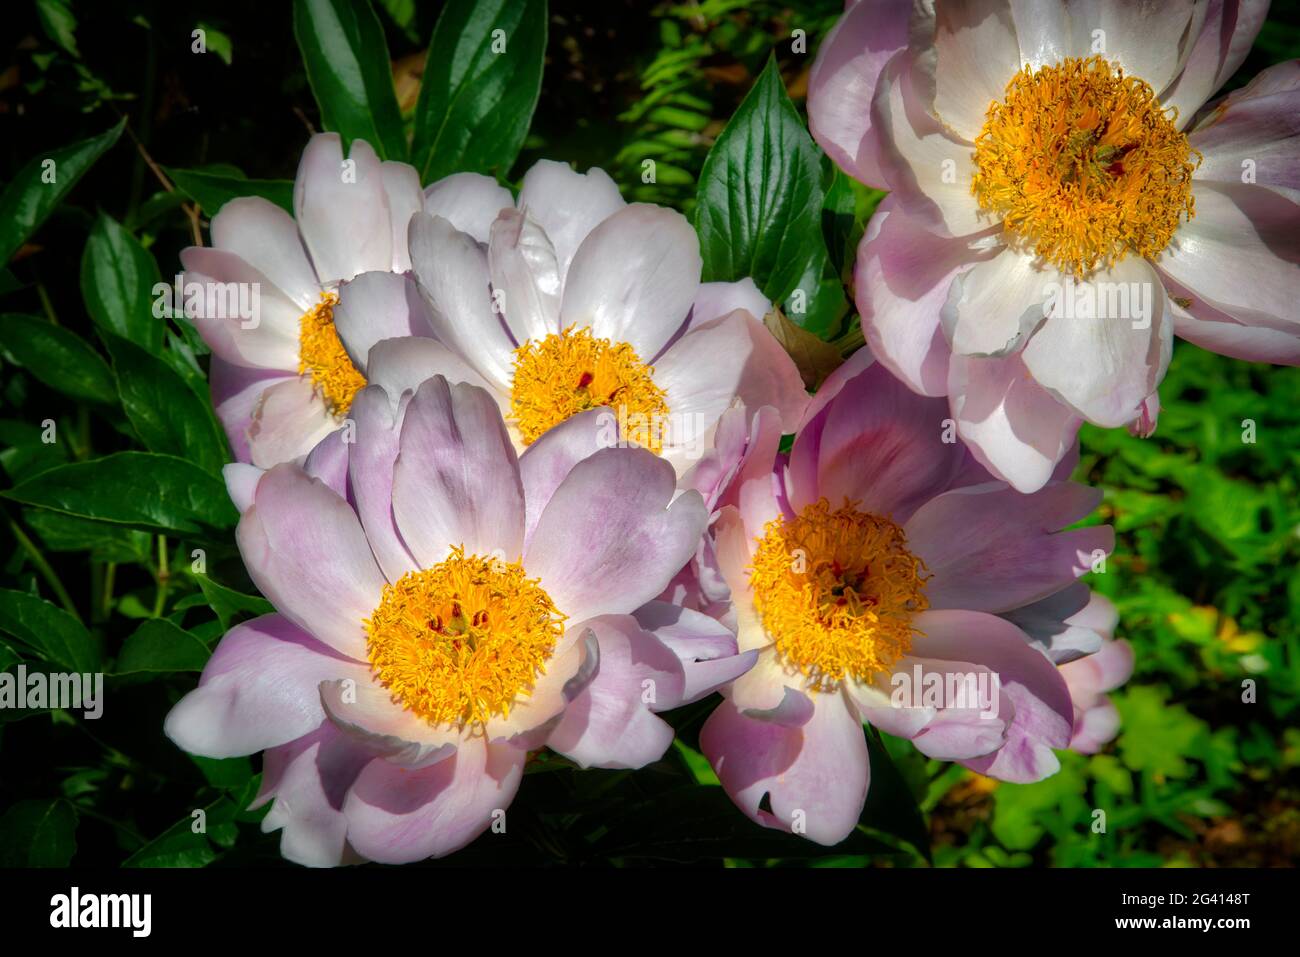 FLORA: Flowering Garden Peonies (paeonia officinalis) Stock Photo